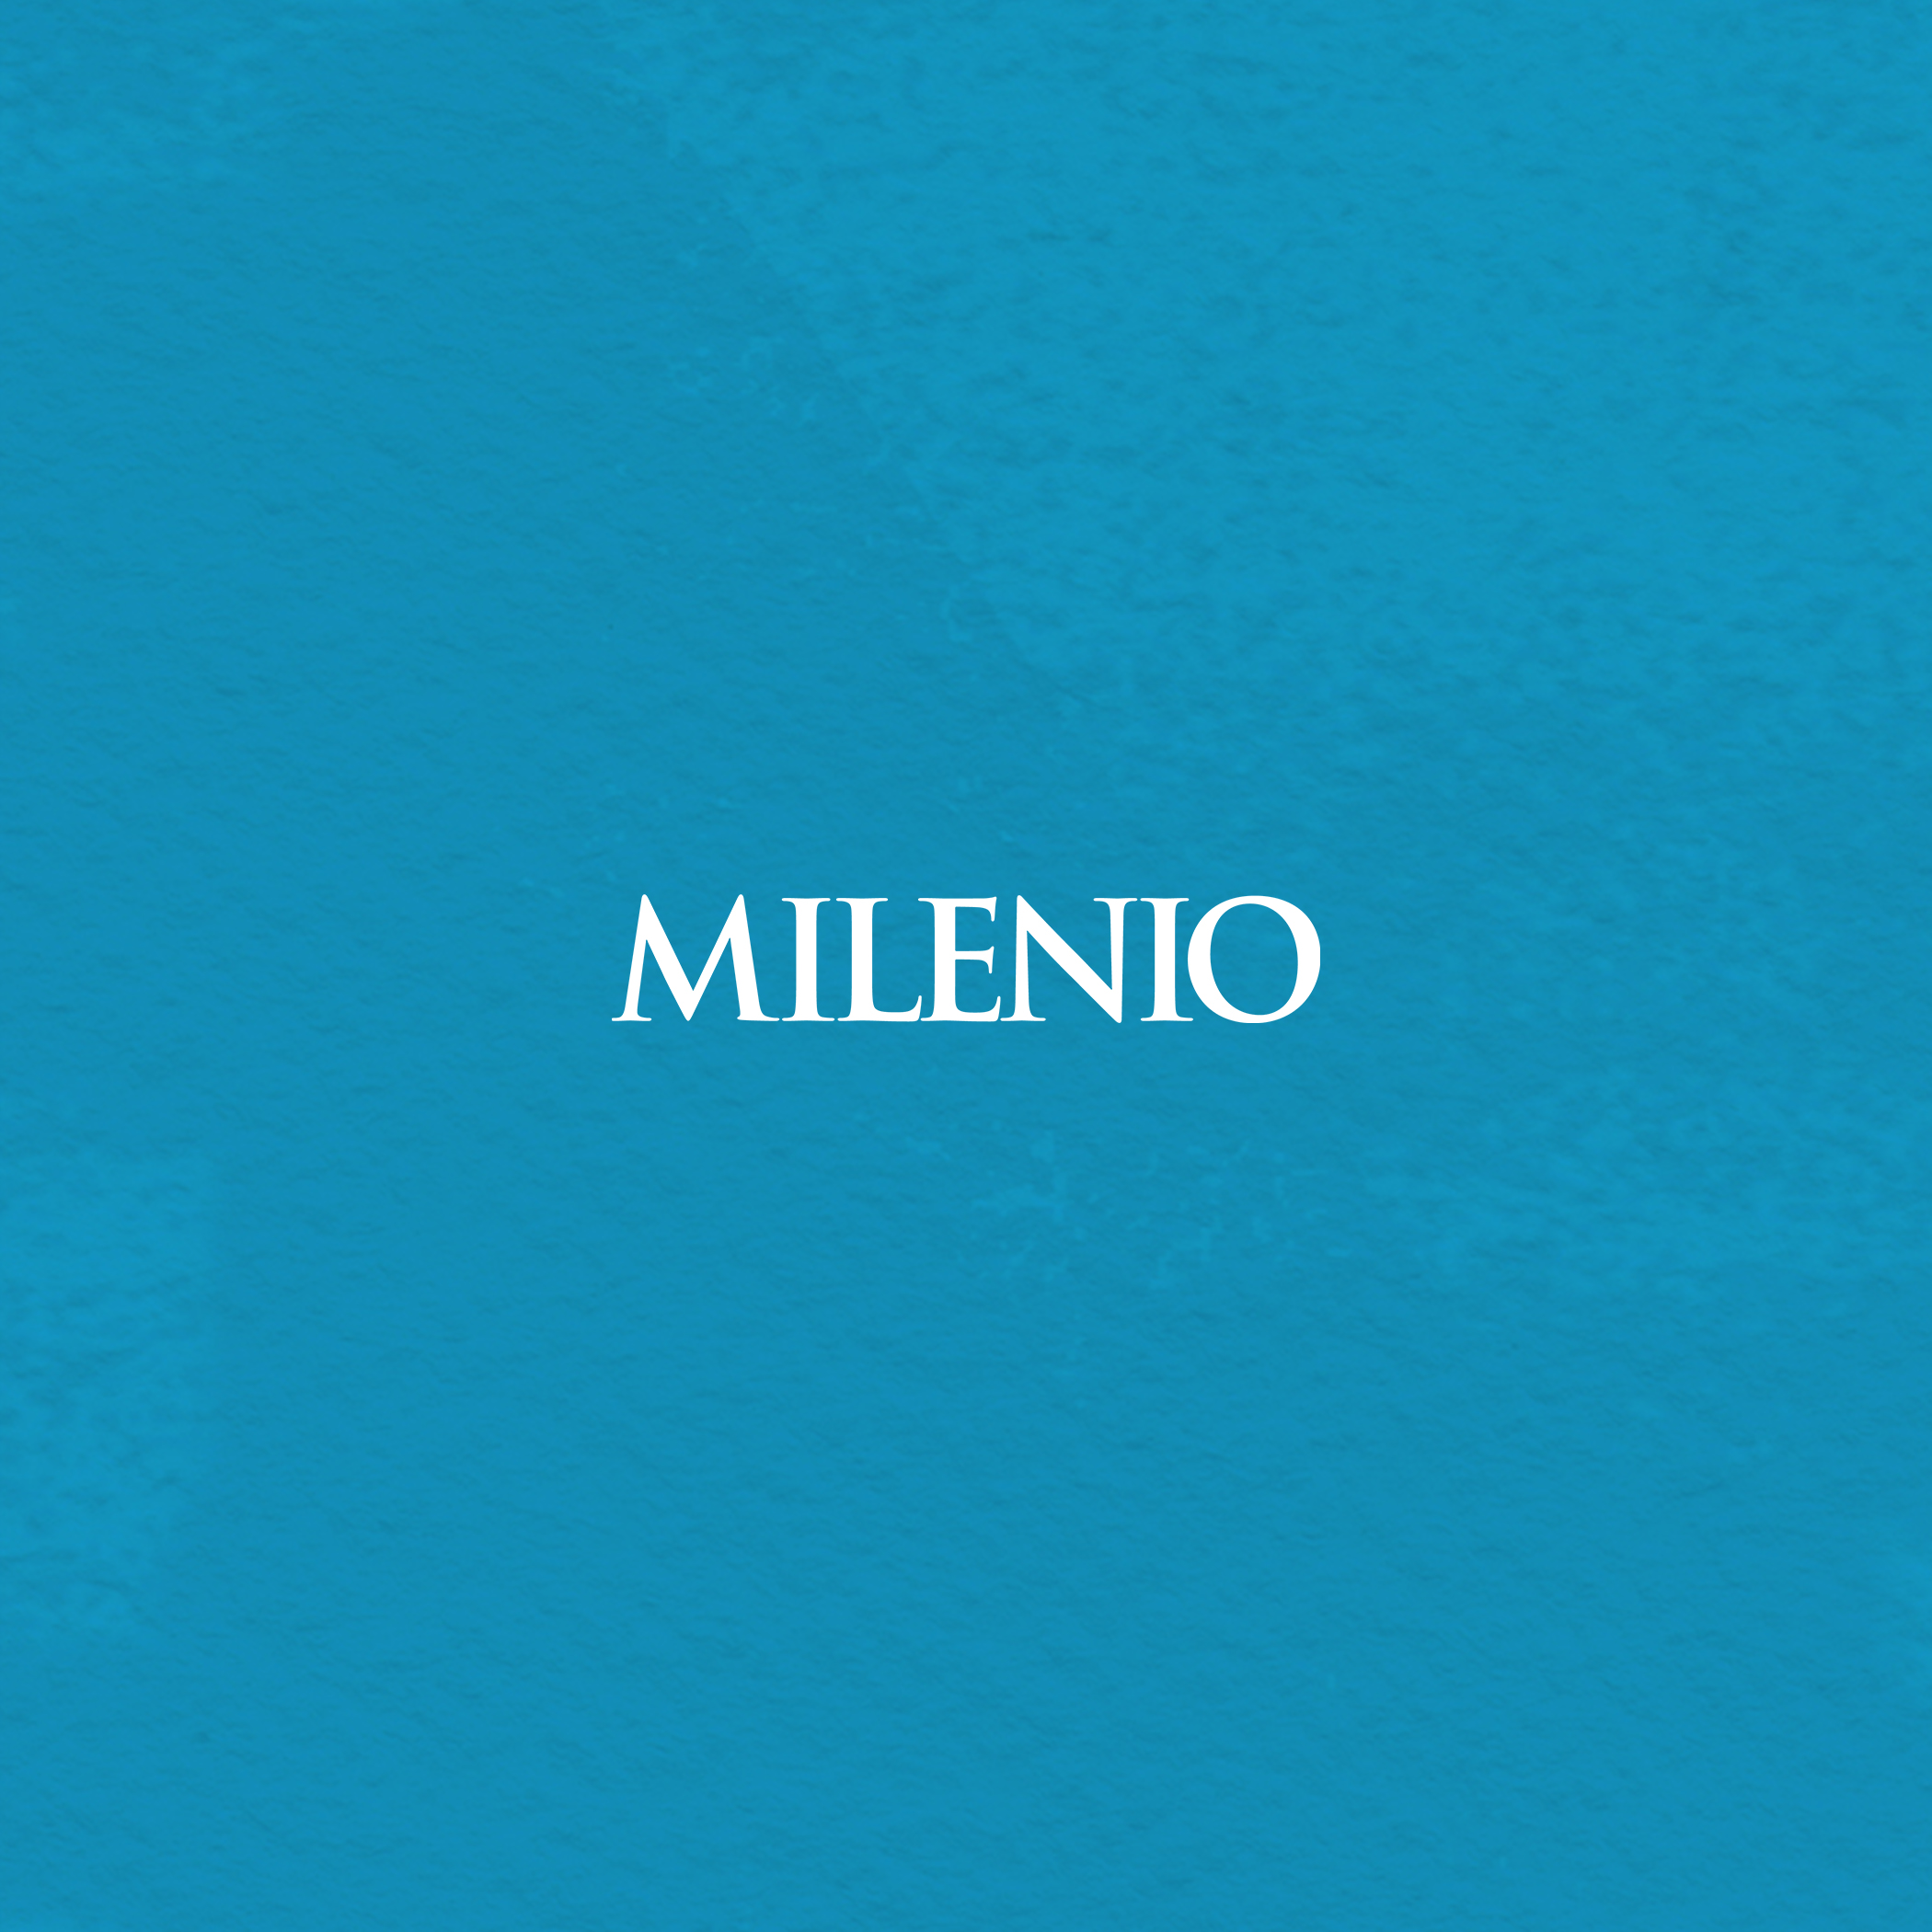 Milenio